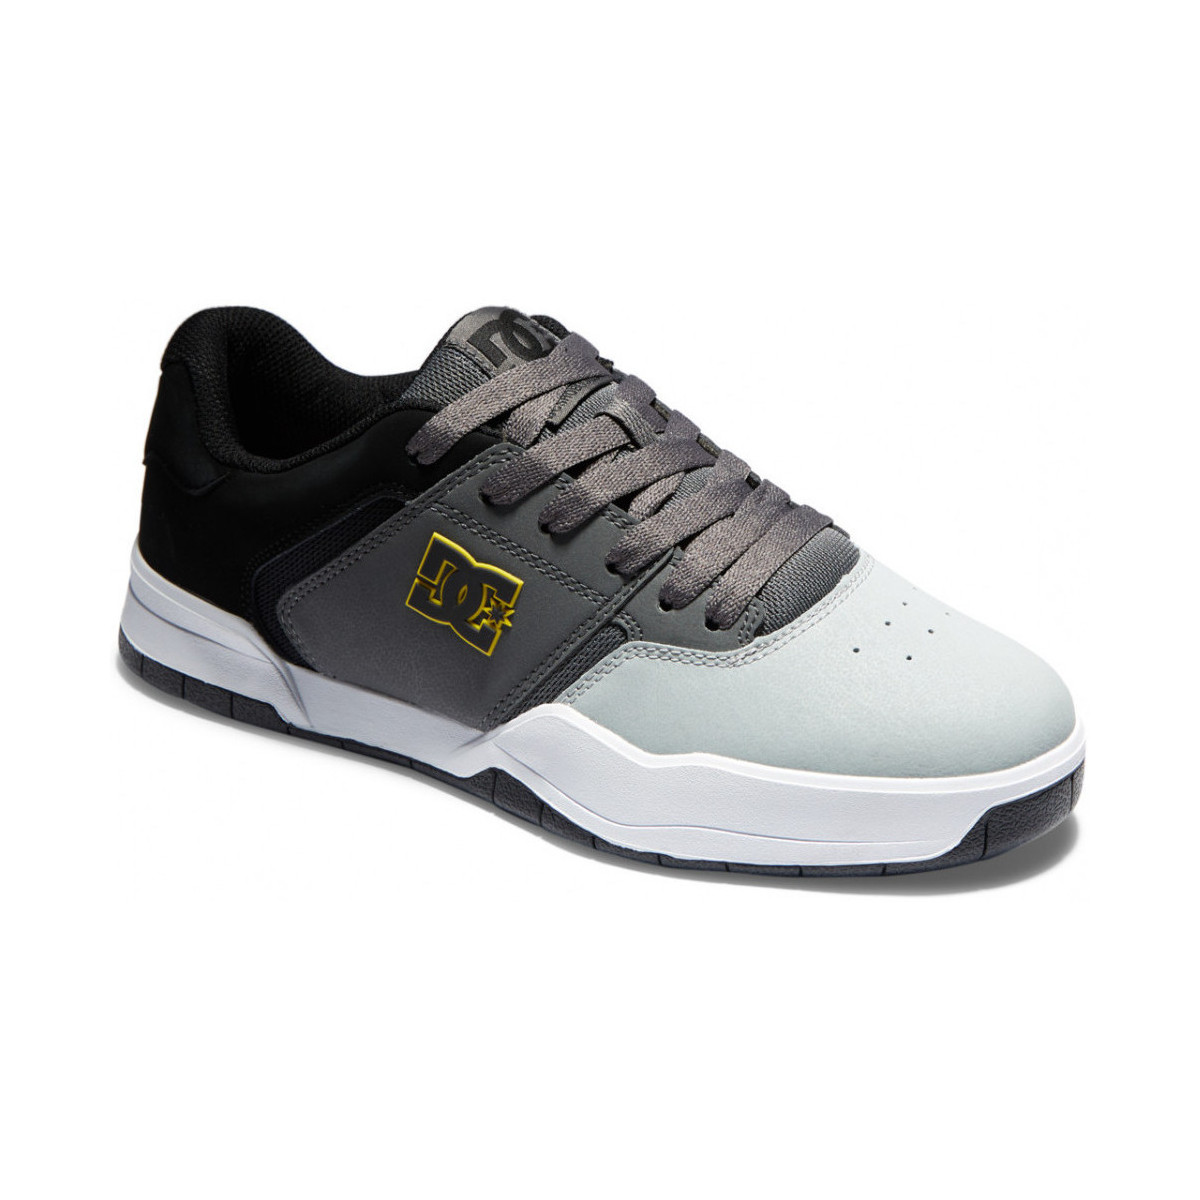 Chaussures zapatillas de running Adidas niño niña constitución ligera talla 43.5 CENTRAL black grey yellow Gris